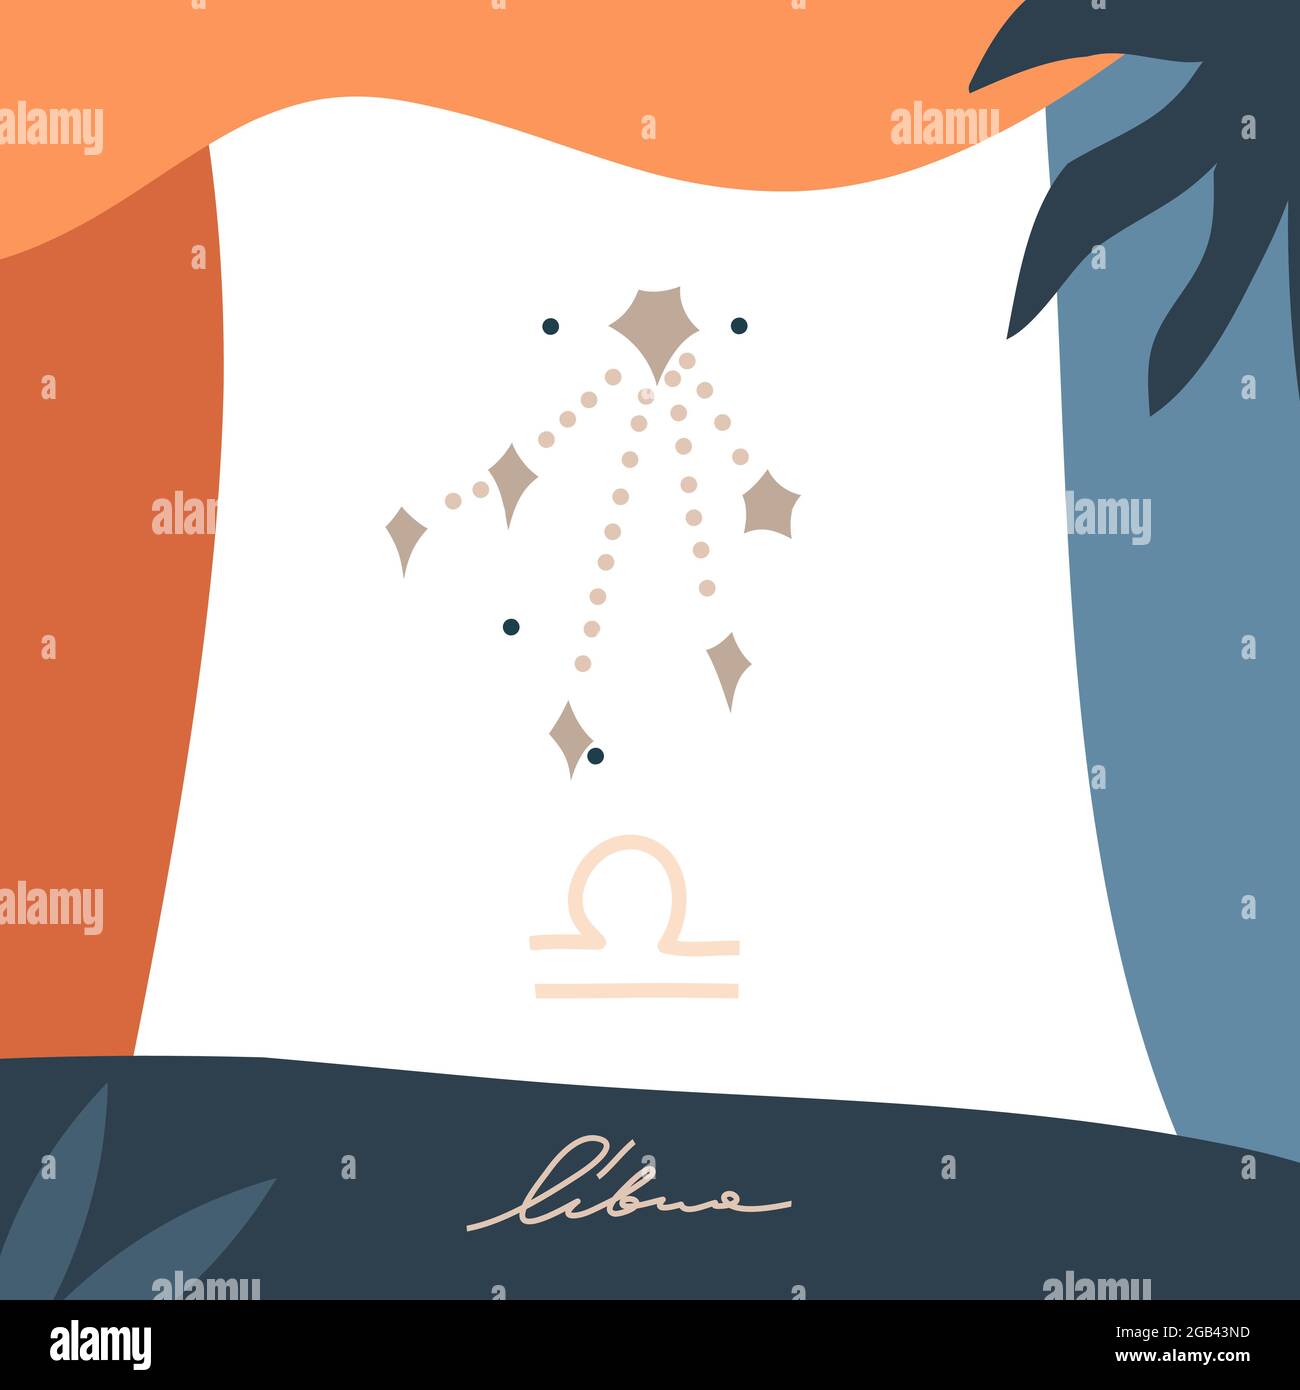 Dessin à la main vecteur résumé stock graphique astrologie simple Astro illustration carte art avec collage moderne artistique boho imprimé contemporain Illustration de Vecteur